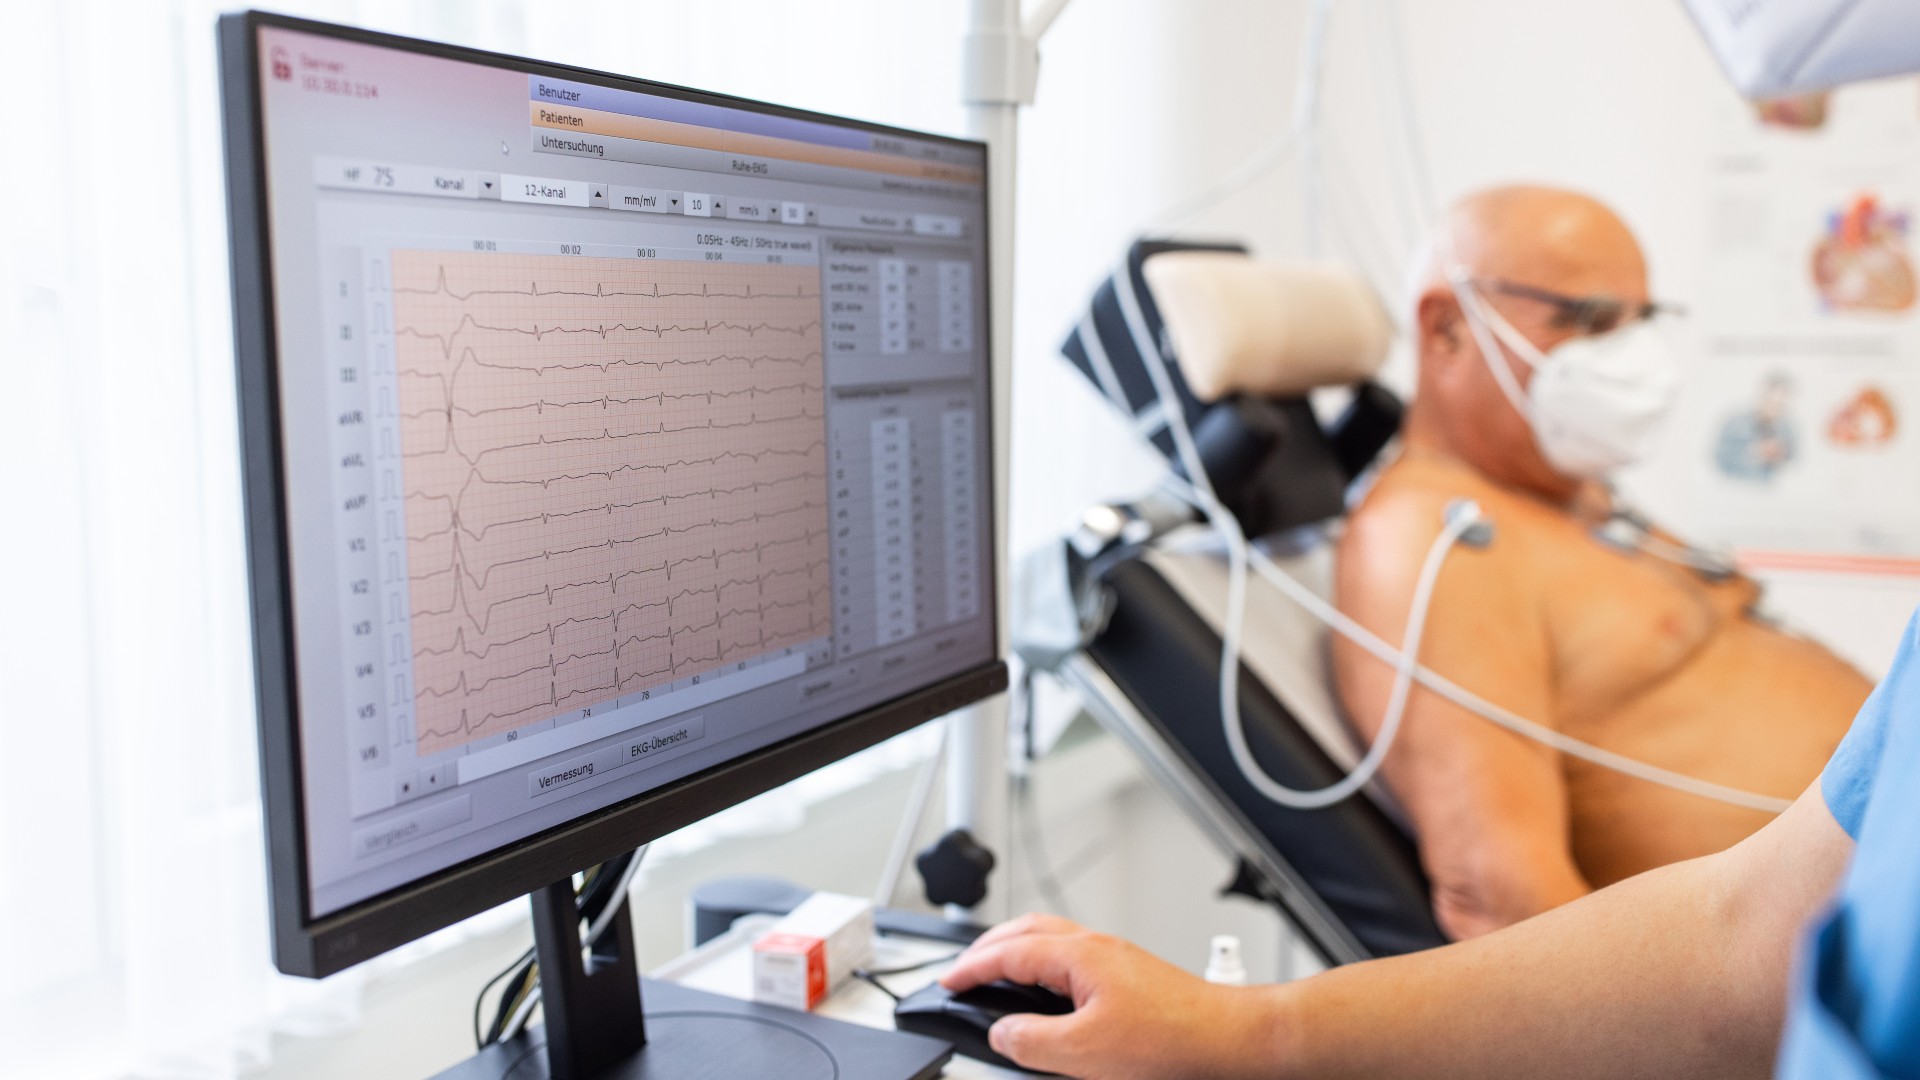 Computermonitor mit EKG-Herzbelastungstestergebnissen eines älteren männlichen Patienten auf einem Fahrrad.  Nahaufnahme des Computerbildschirms in der Kardiologieklinik.